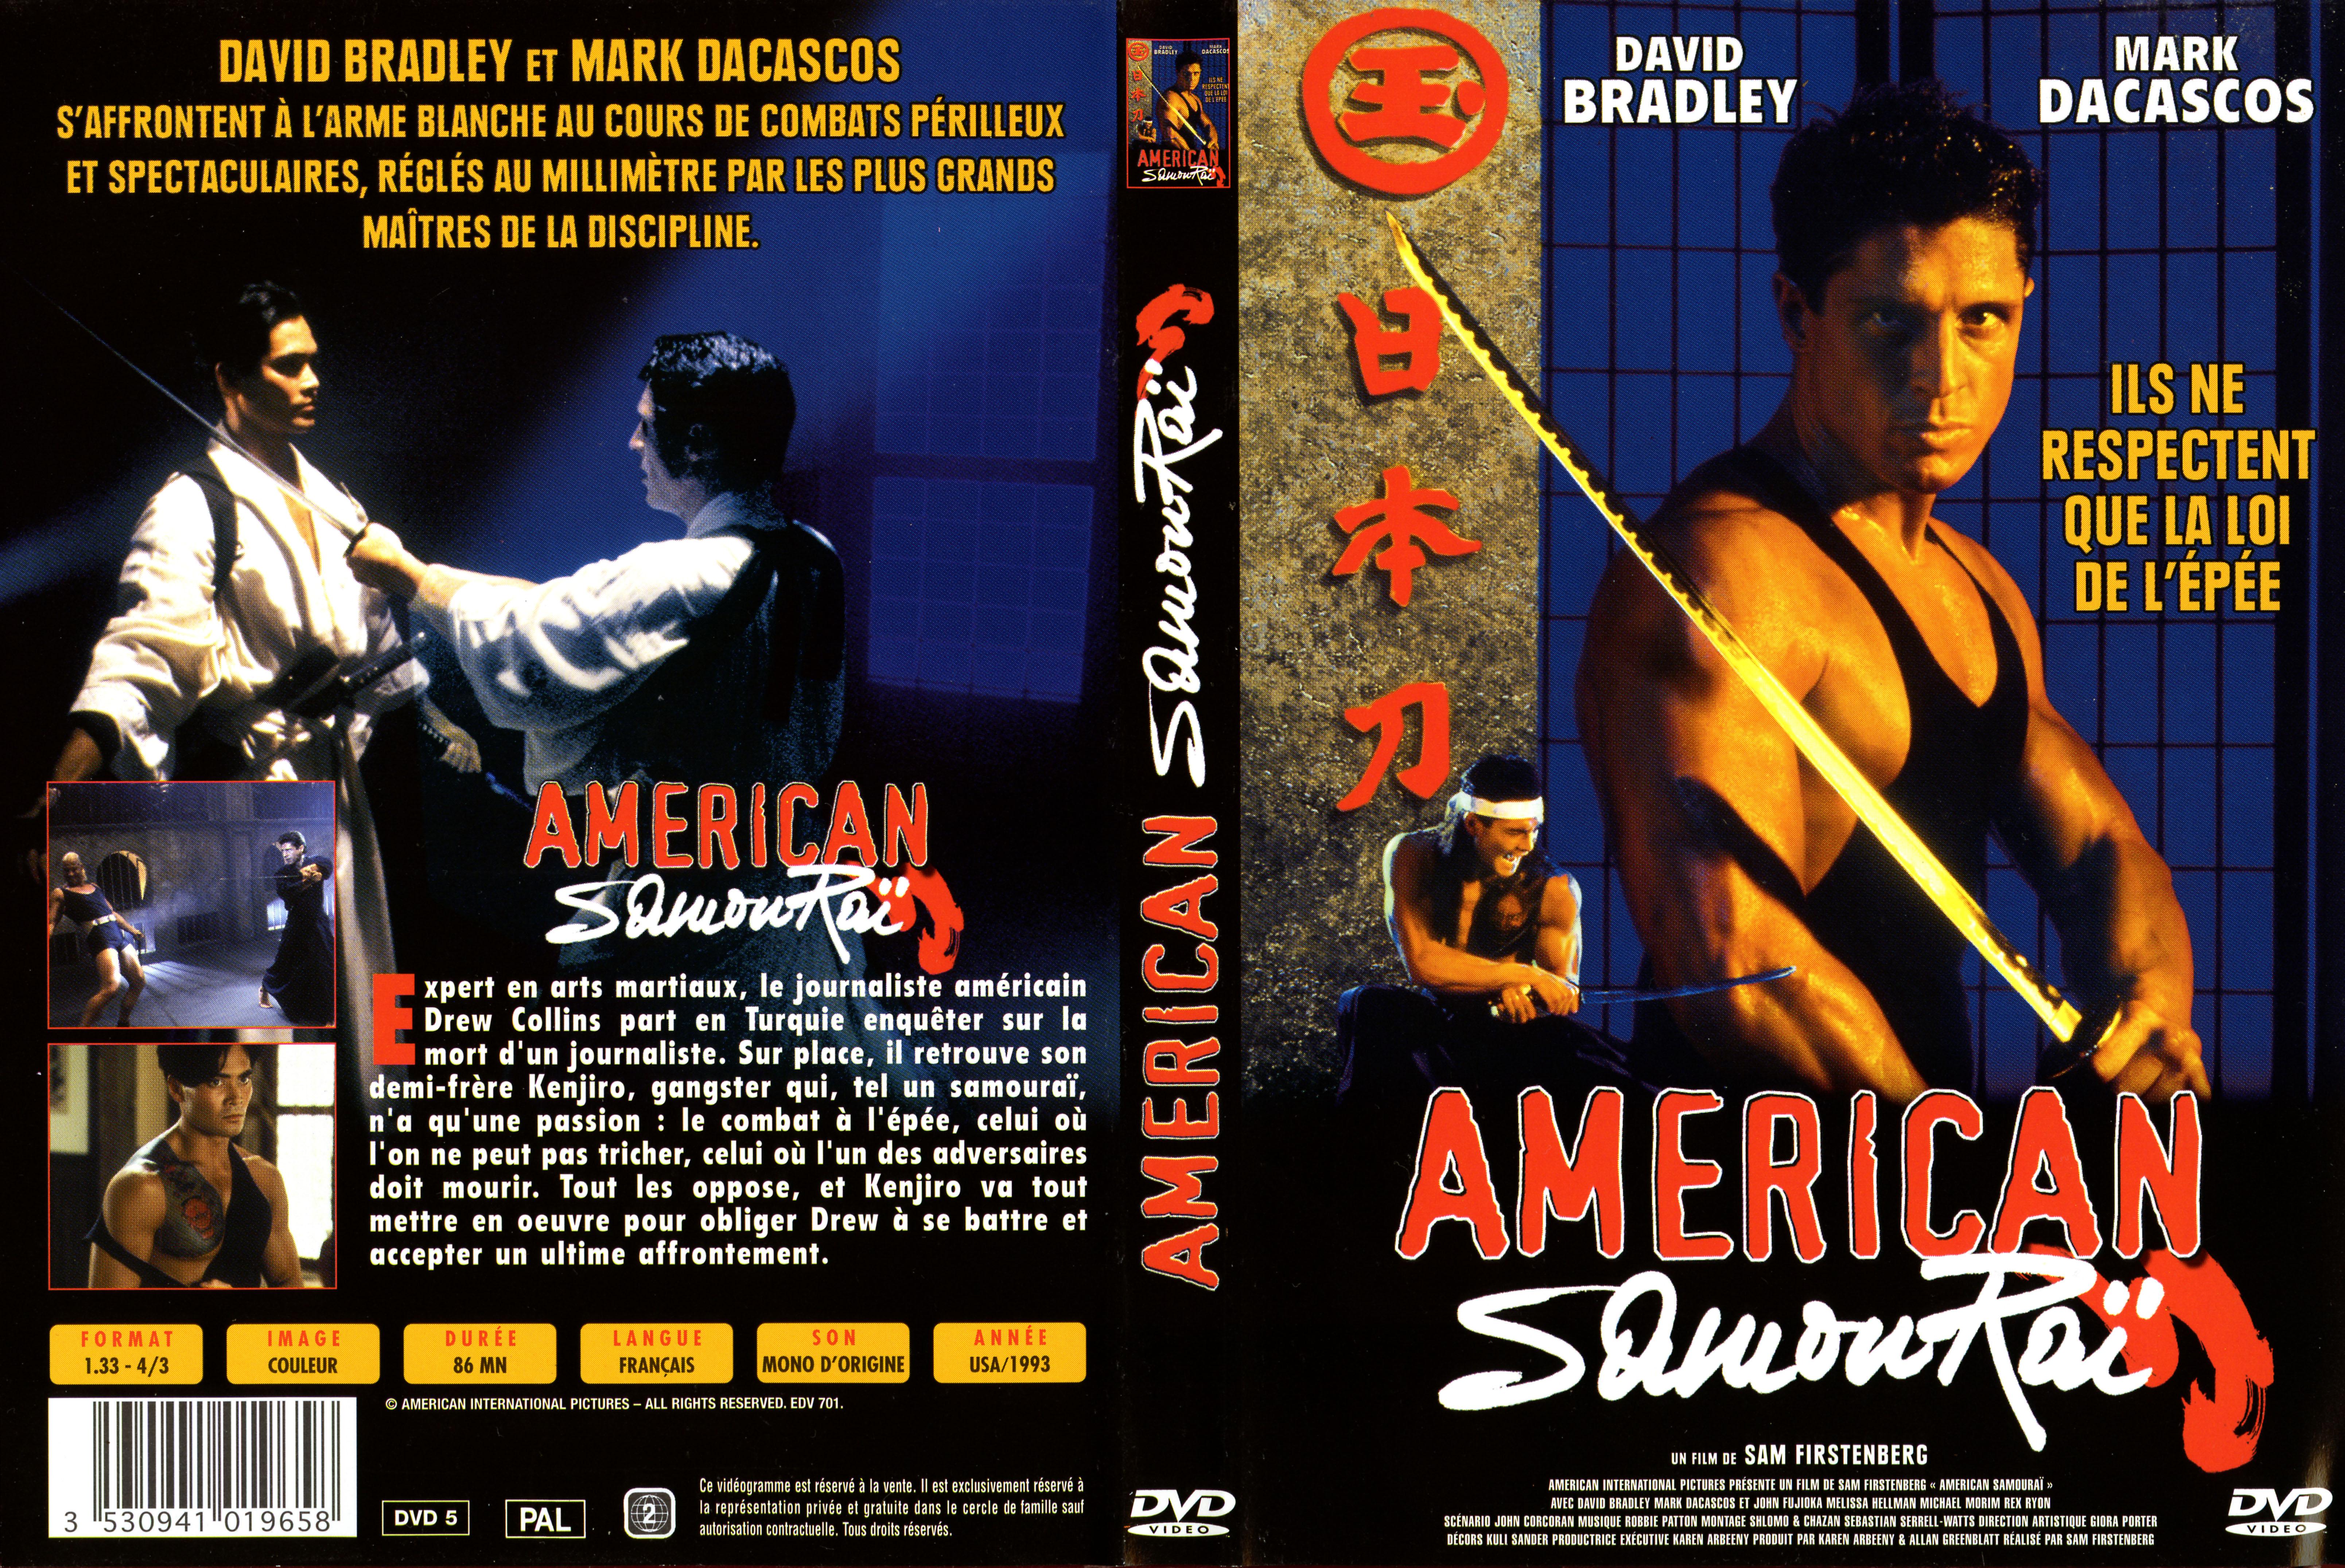 Jaquette DVD American samourai v2